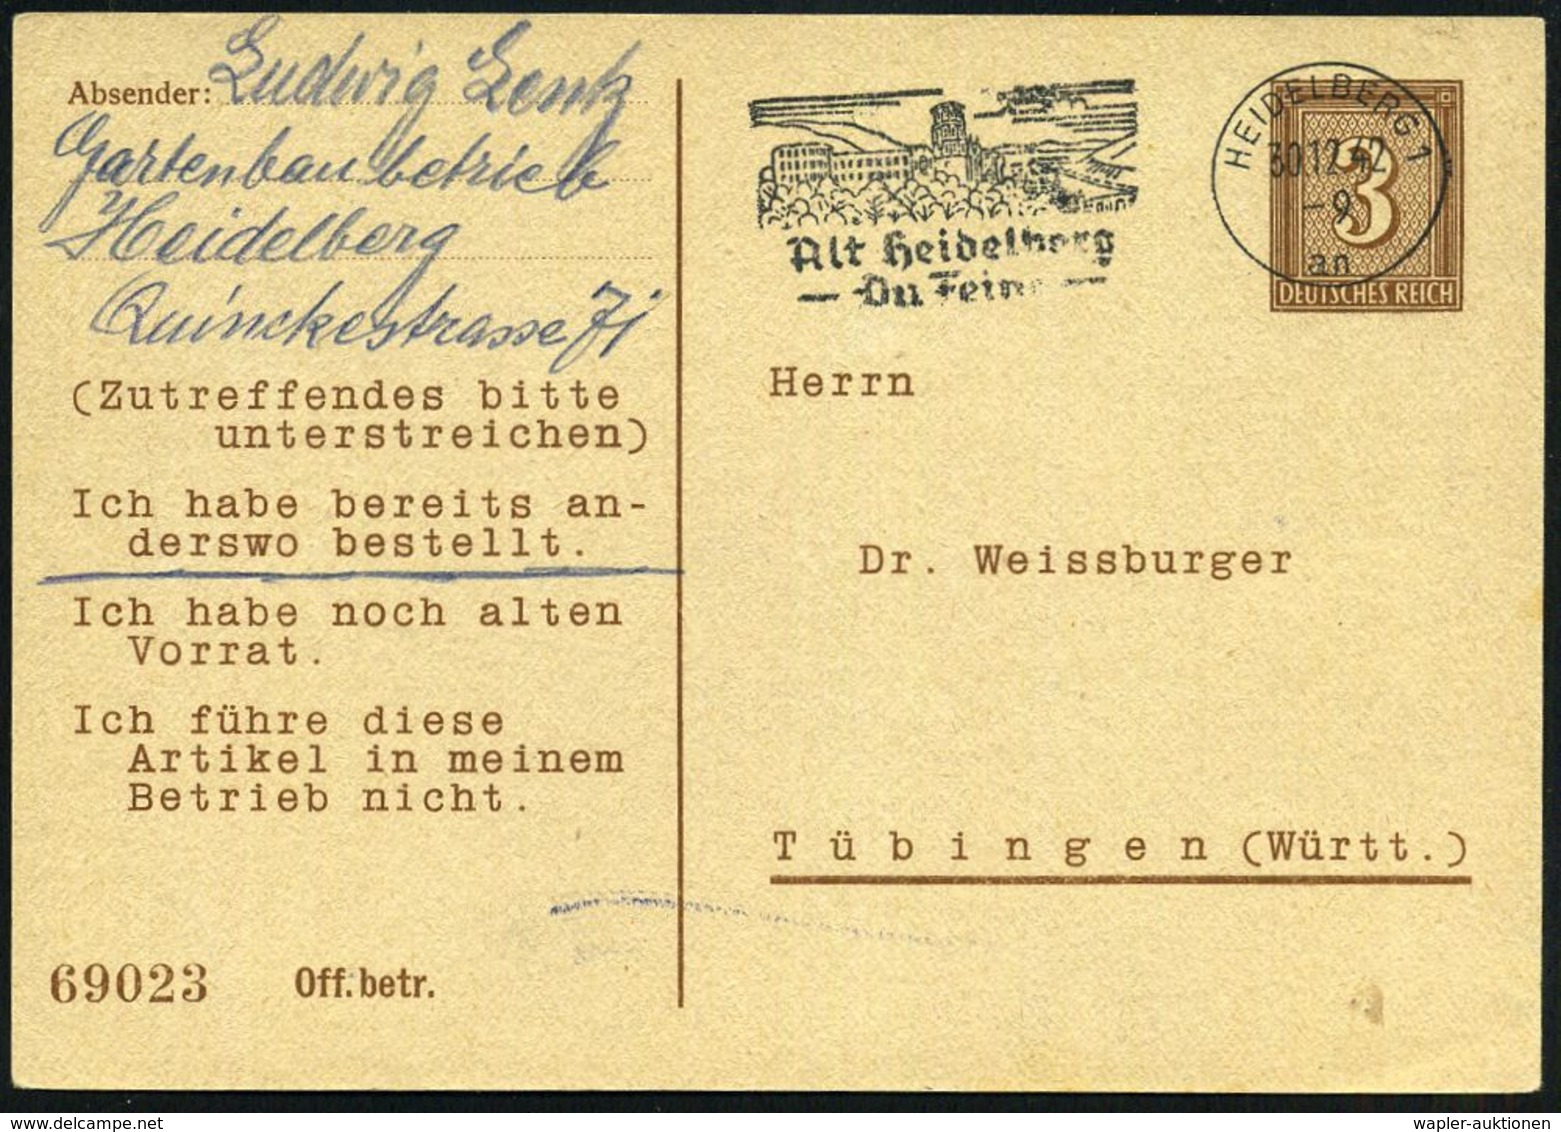 HEIDELBERG 1/ An/ Alt Heidelberg/ Du Feine 1942 (30.12.) MaWSt. (Schloß) = Liedtext Auf PP 3 Pf. Ziffer, Braun: Dr. Weis - Musique